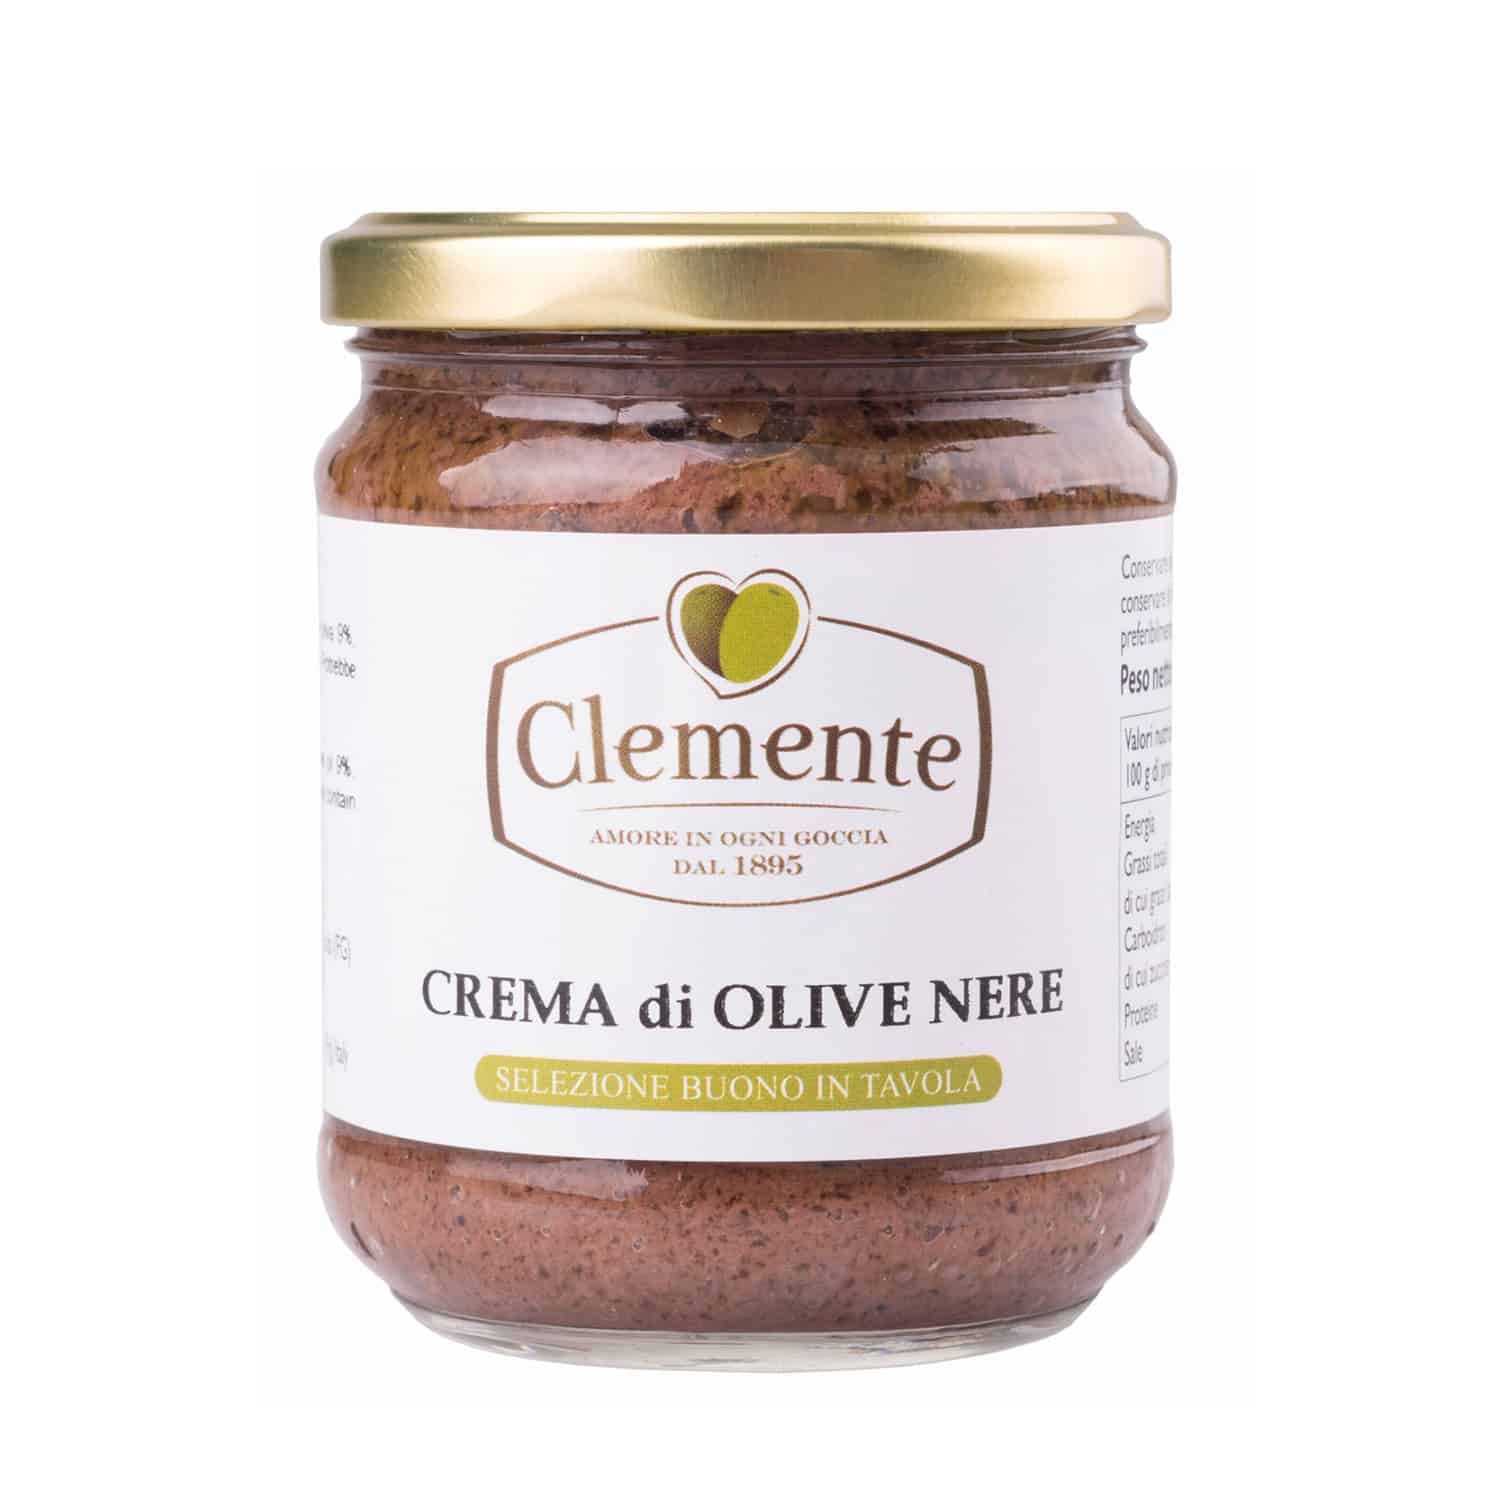 Crema di Olive Nere 190g - Olio Clemente